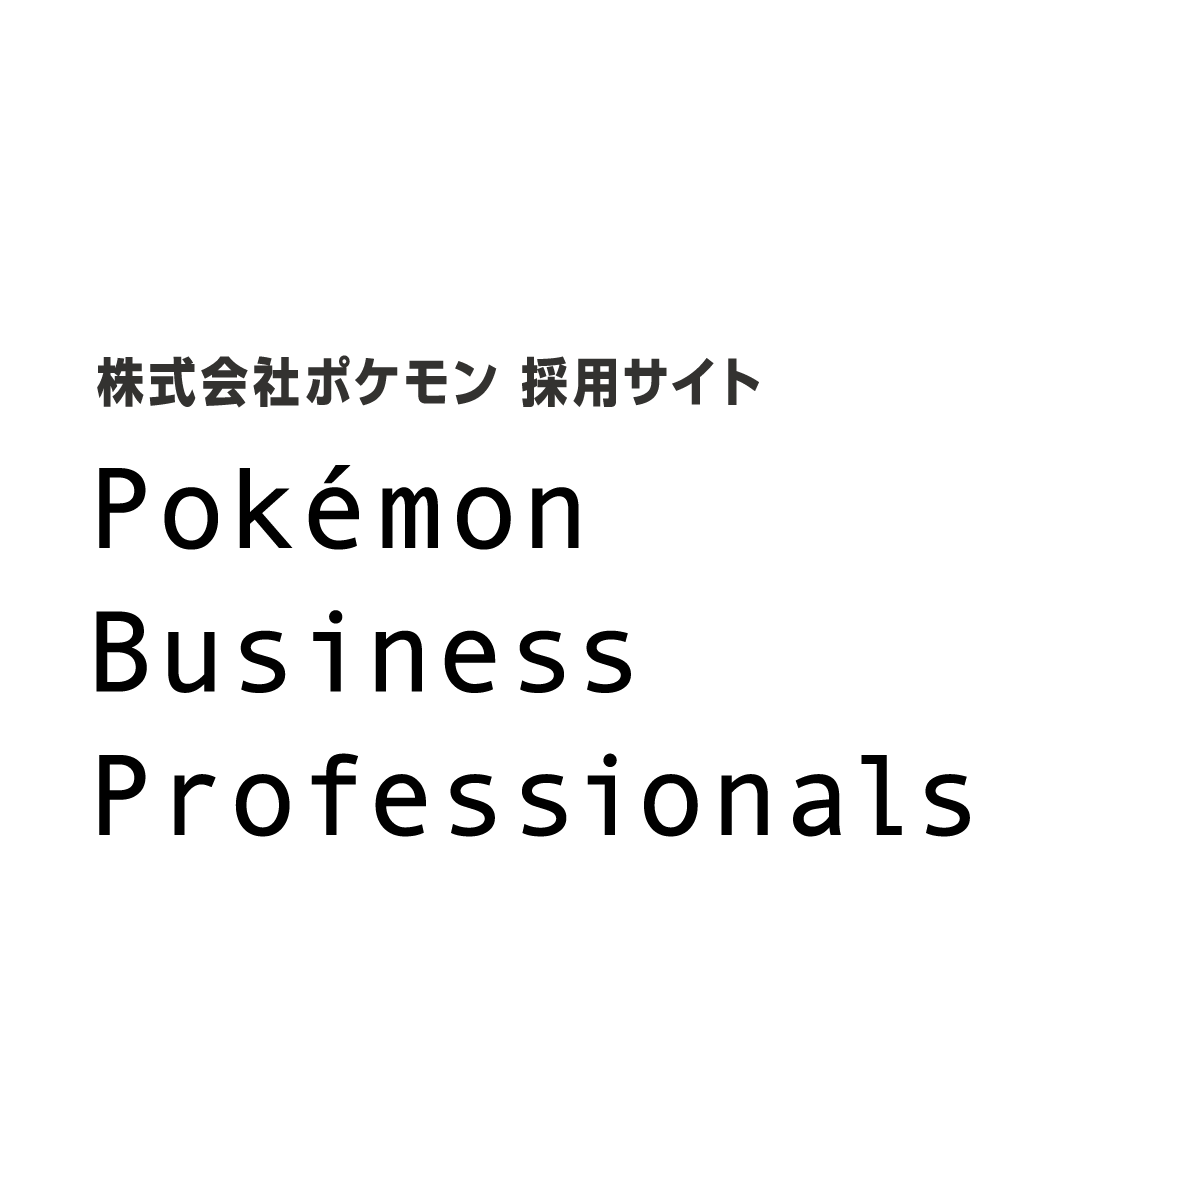 募集要項 募集要項 新卒 Pokemon Business Professionals 株式会社ポケモン採用情報